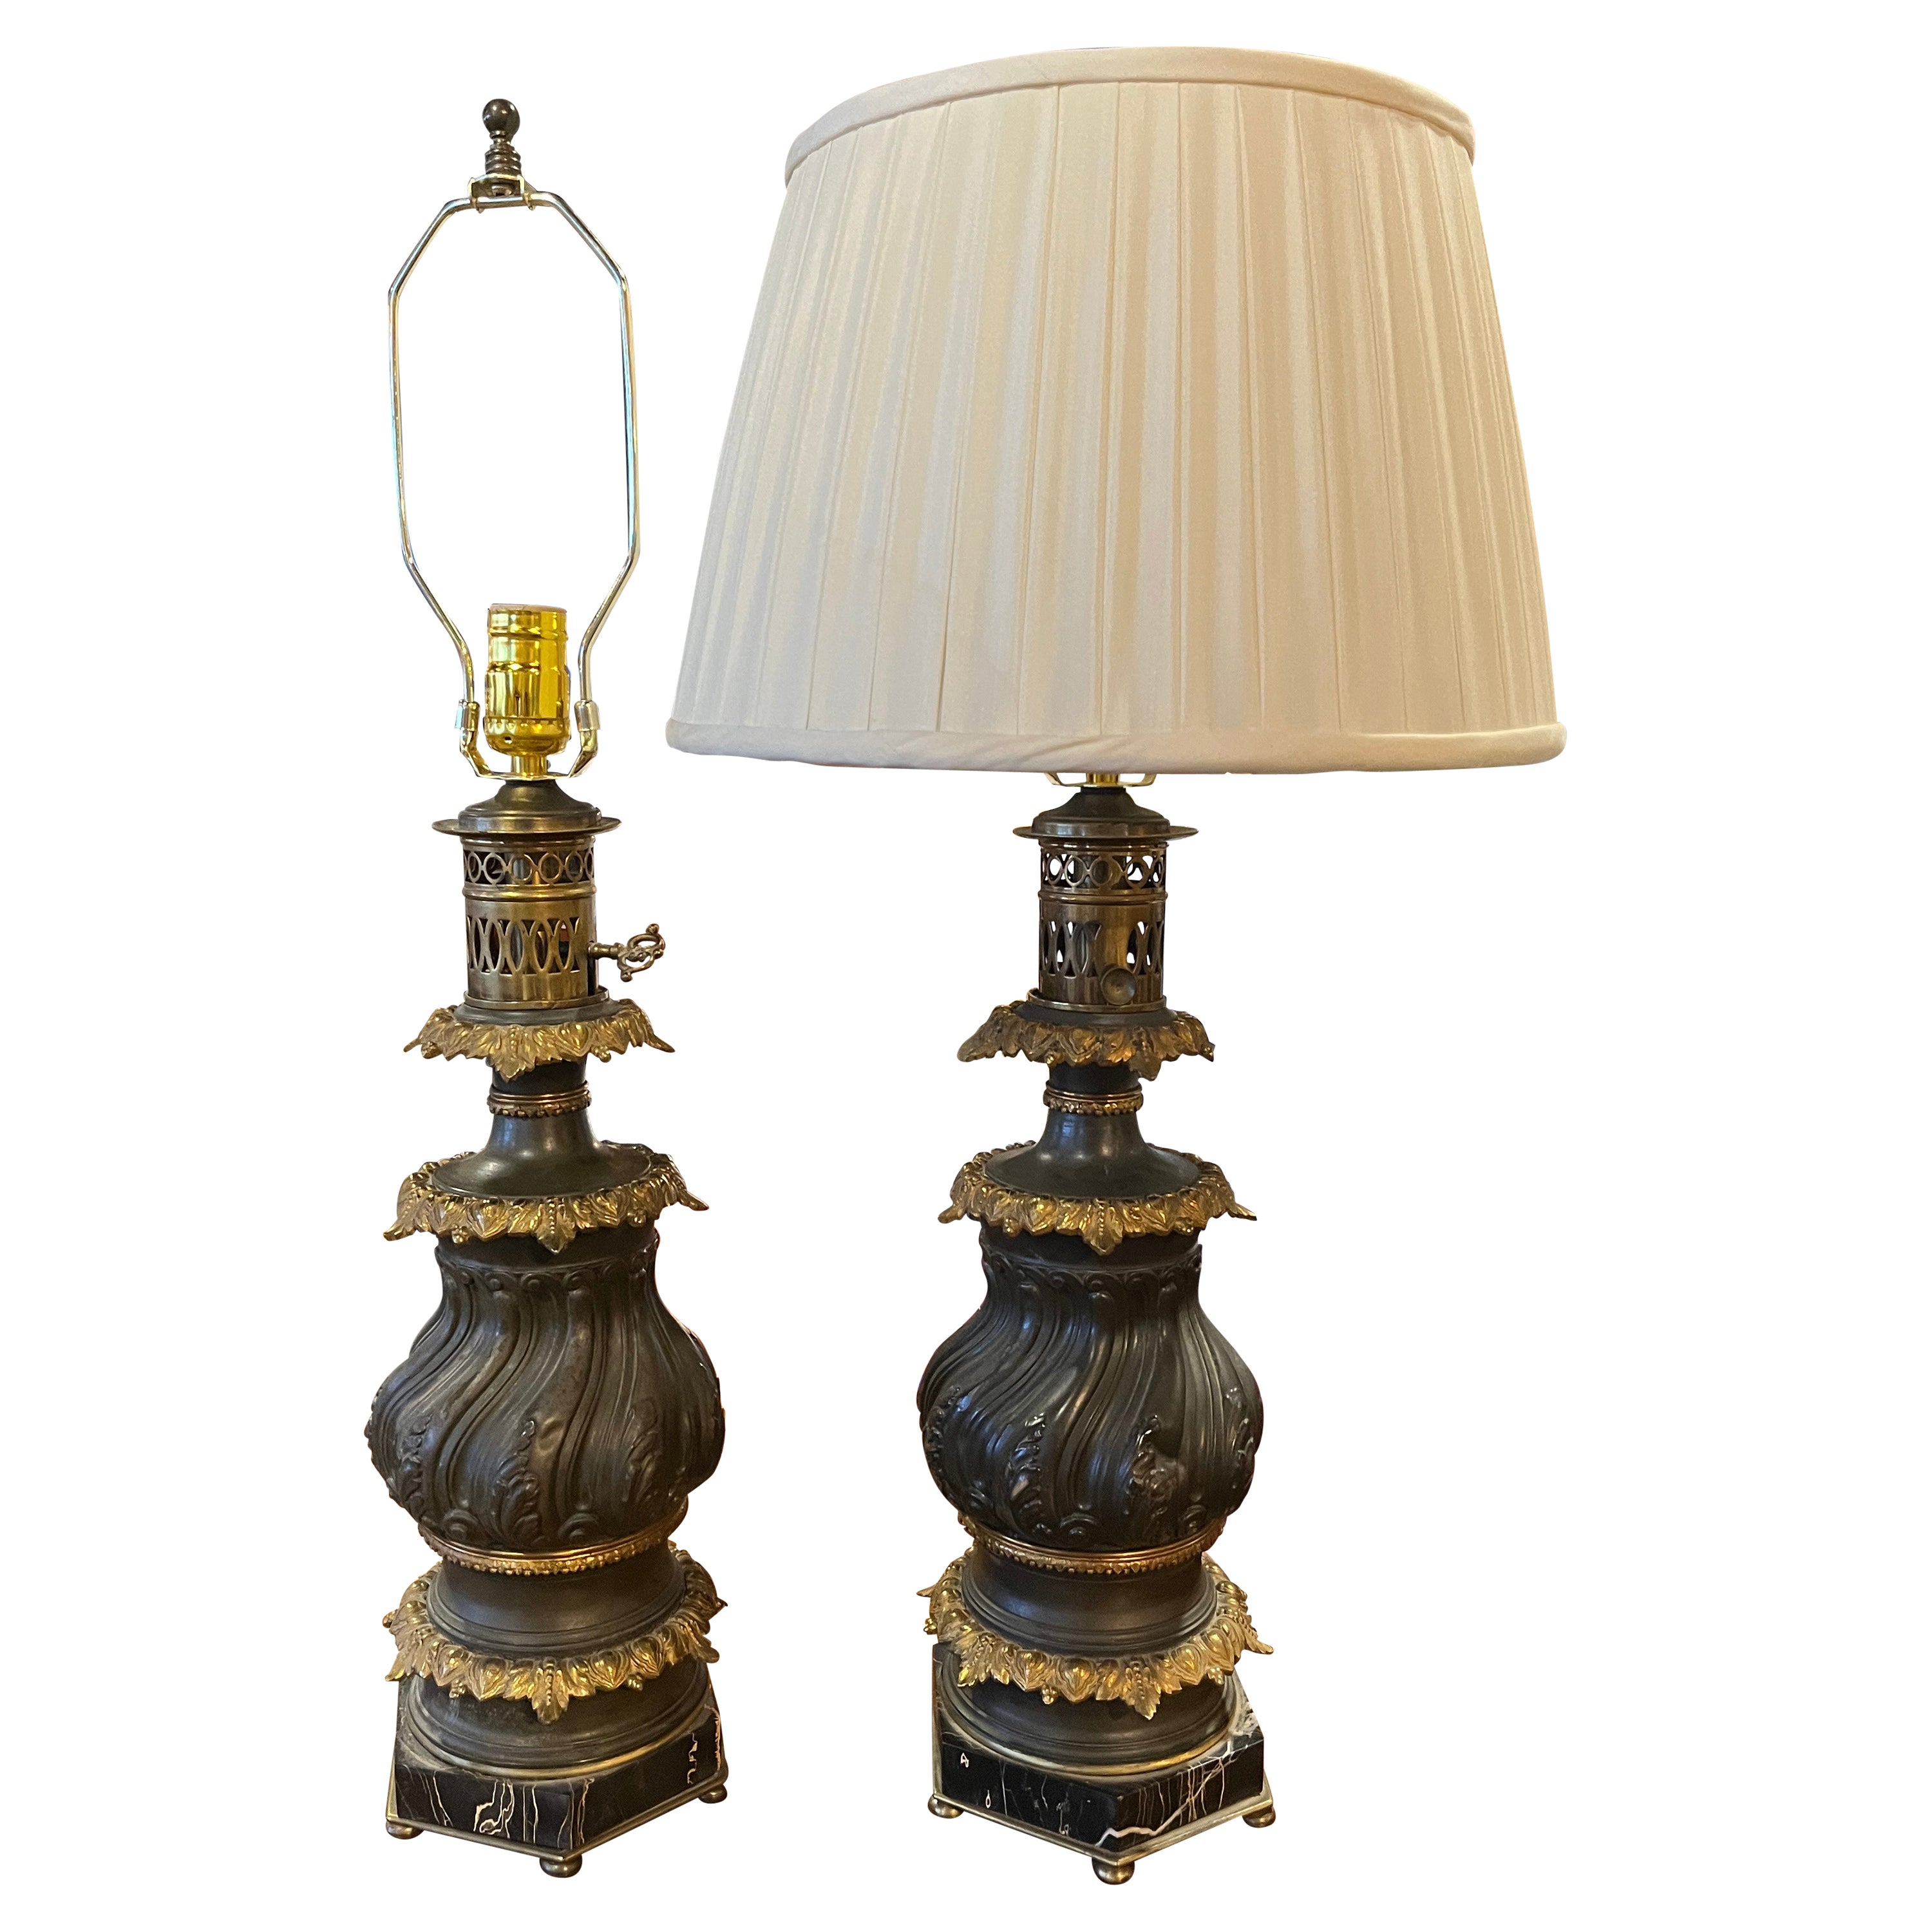 Lampes à huile en bronze et bronze doré sur base en marbre, converties en lampes électriques, 19e siècle